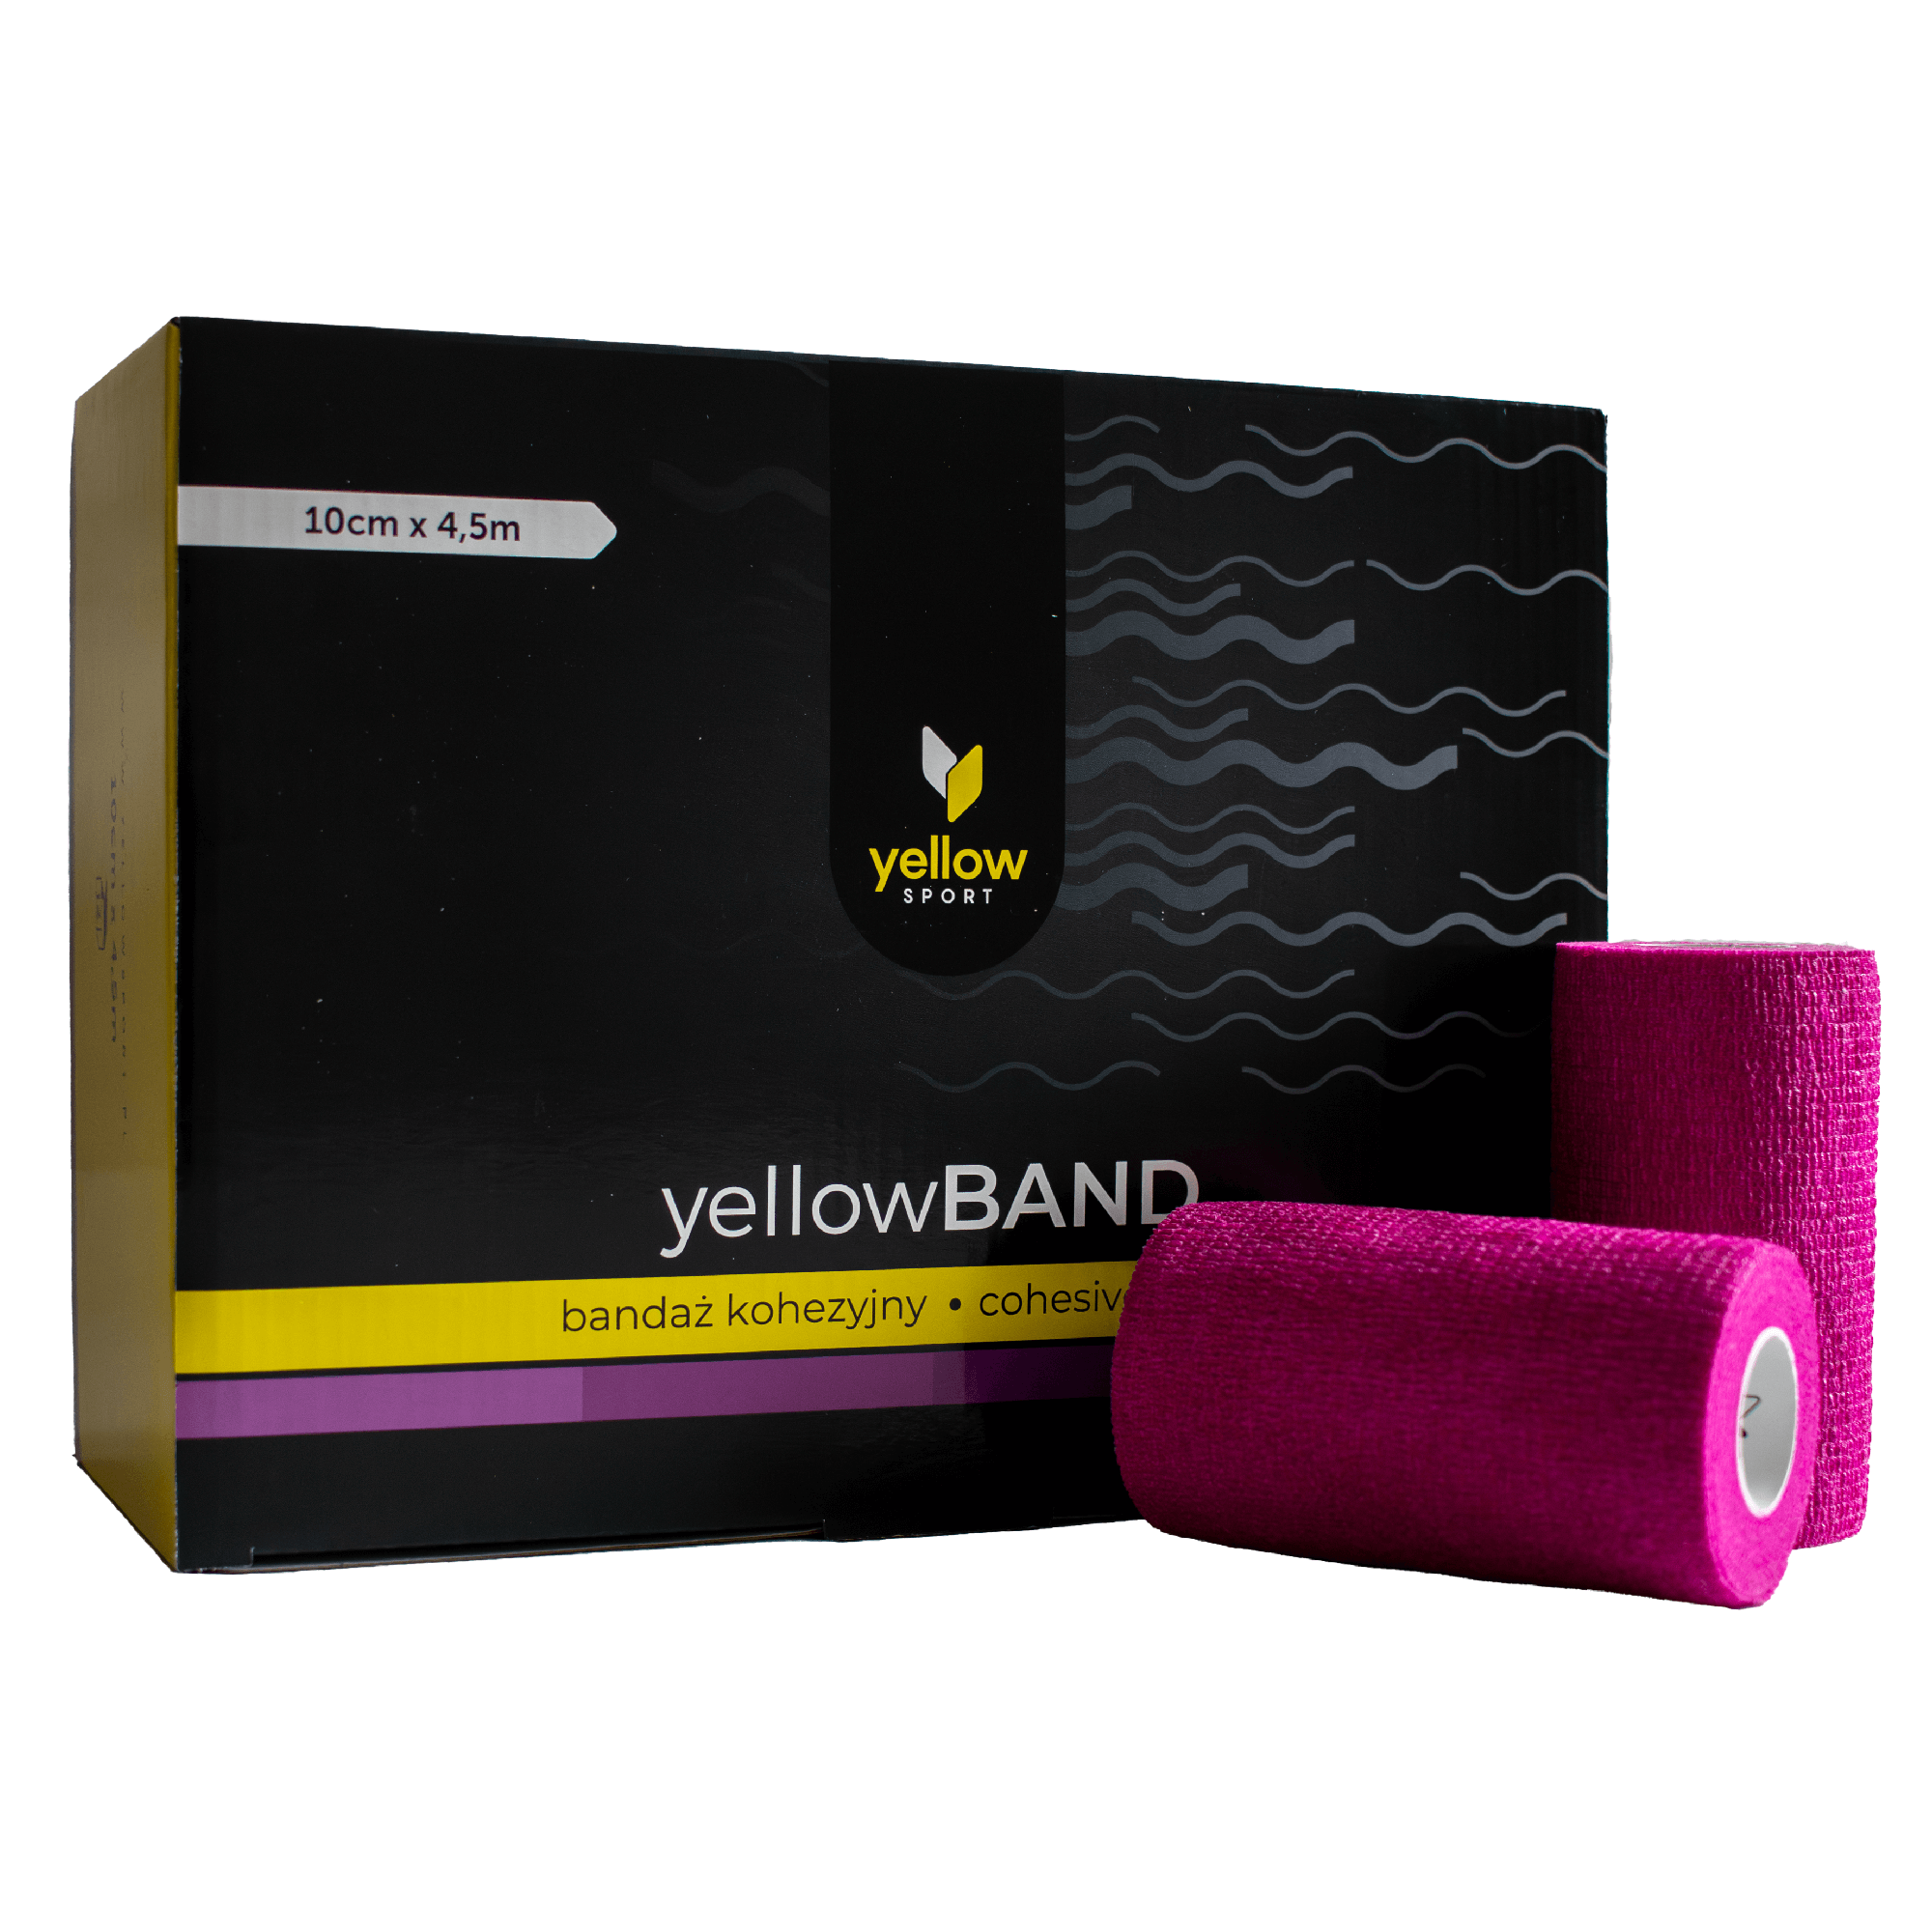 Bandaż kohezyjny yellowBAND - 10cm x 4,5m, fioletowy zestaw 12 szt.